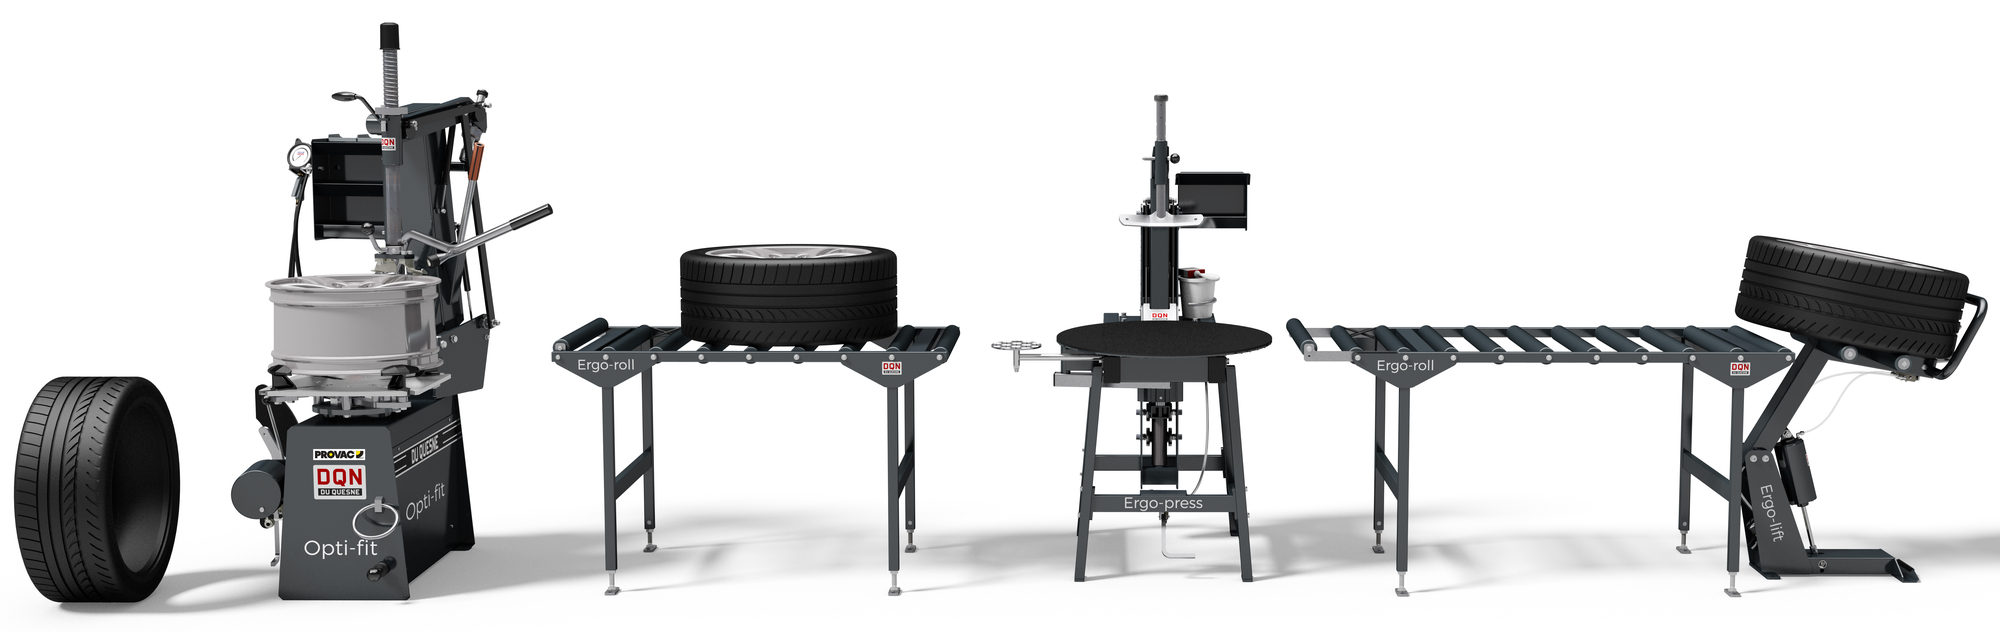 Table à rouleaux pour la manutention des roues DQN Ergo-Roll